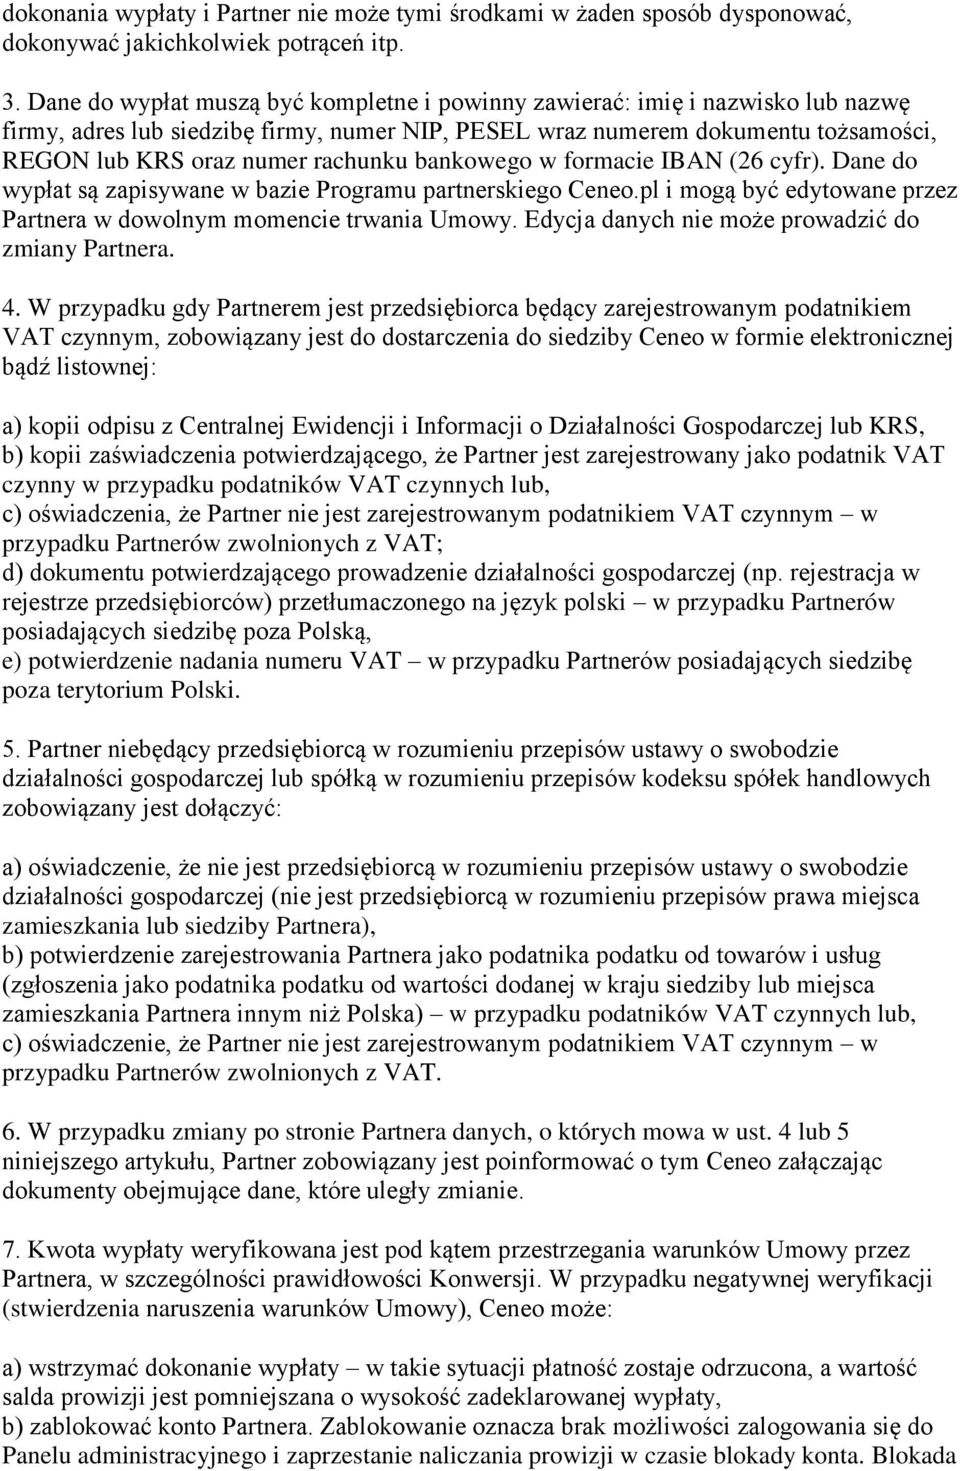 bankowego w formacie IBAN (26 cyfr). Dane do wypłat są zapisywane w bazie Programu partnerskiego Ceneo.pl i mogą być edytowane przez Partnera w dowolnym momencie trwania Umowy.